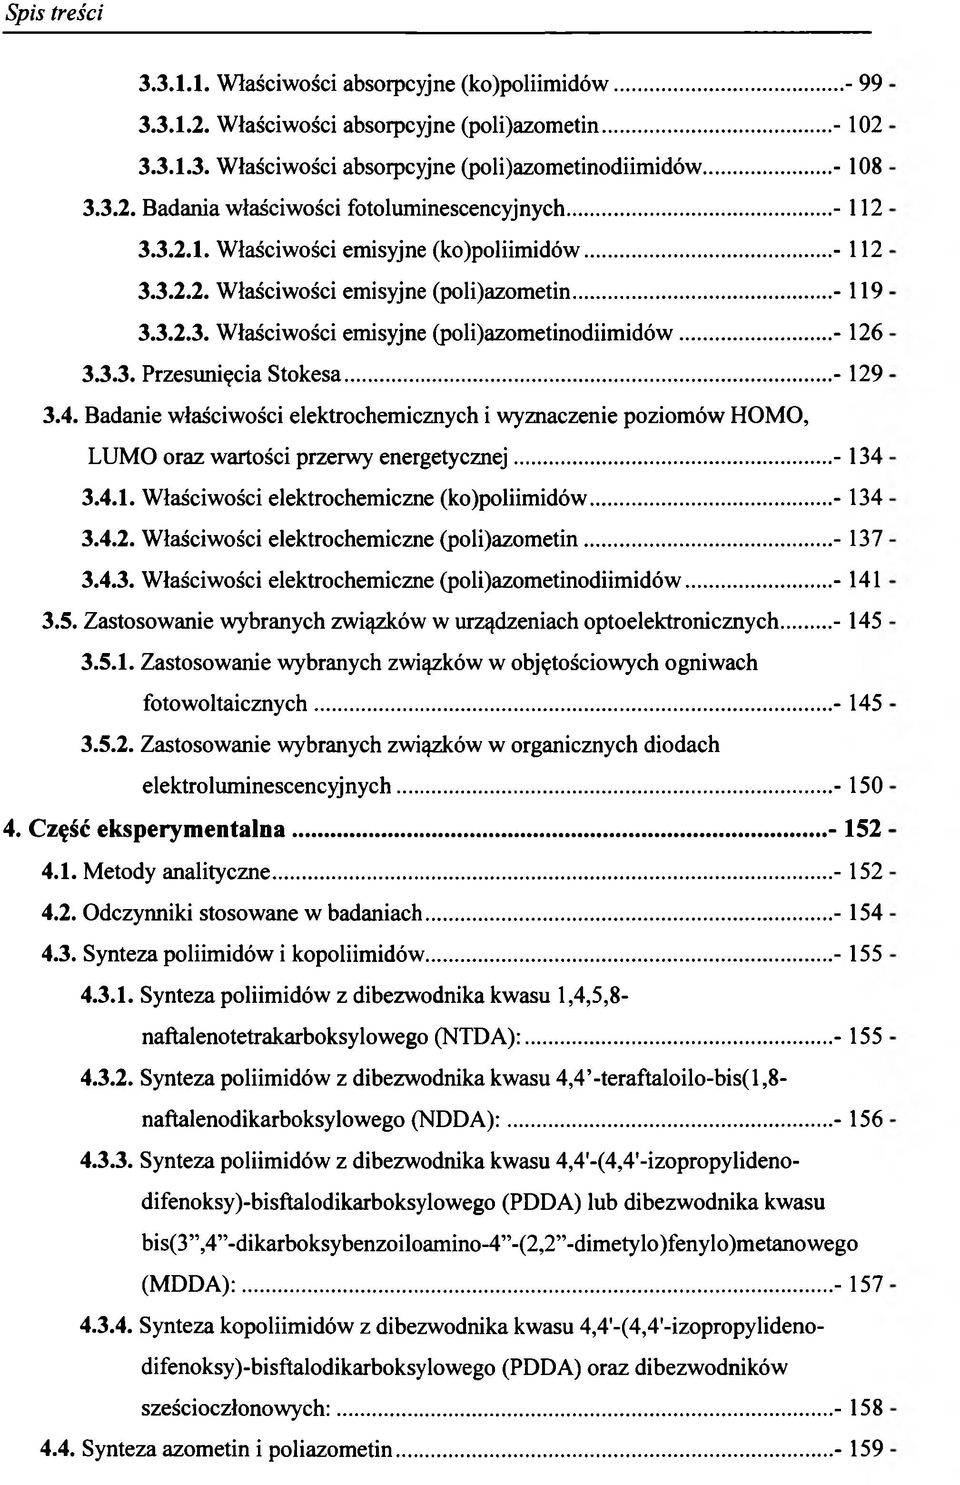 ..- 129 3.4. Badanie właściwości elektrochemicznych i wyznaczenie poziomów HOMO, LUMO oraz wartości przerwy energetycznej...- 134 3.4.1. Właściwości elektrochemiczne (ko)poliimidów...- 134 3.4.2. Właściwości elektrochemiczne (poli)azometin.